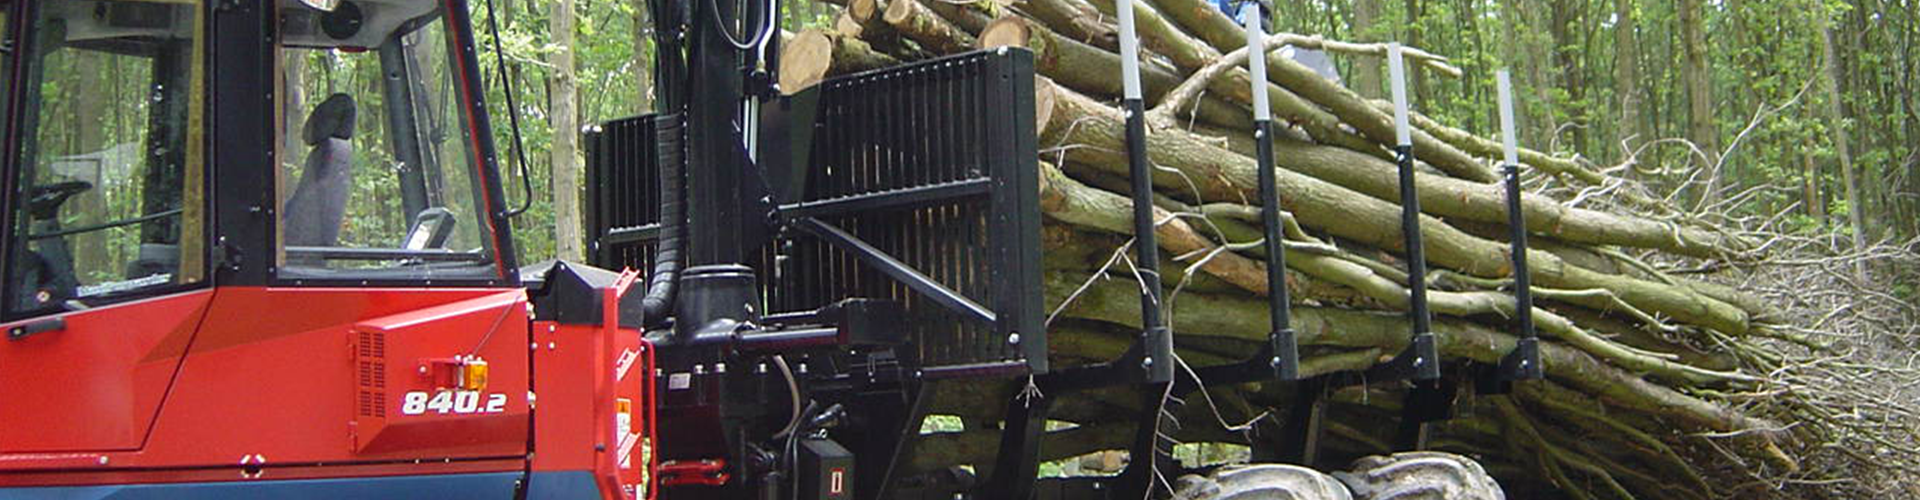 Nella foto si può vedere il trasporto di tronchi